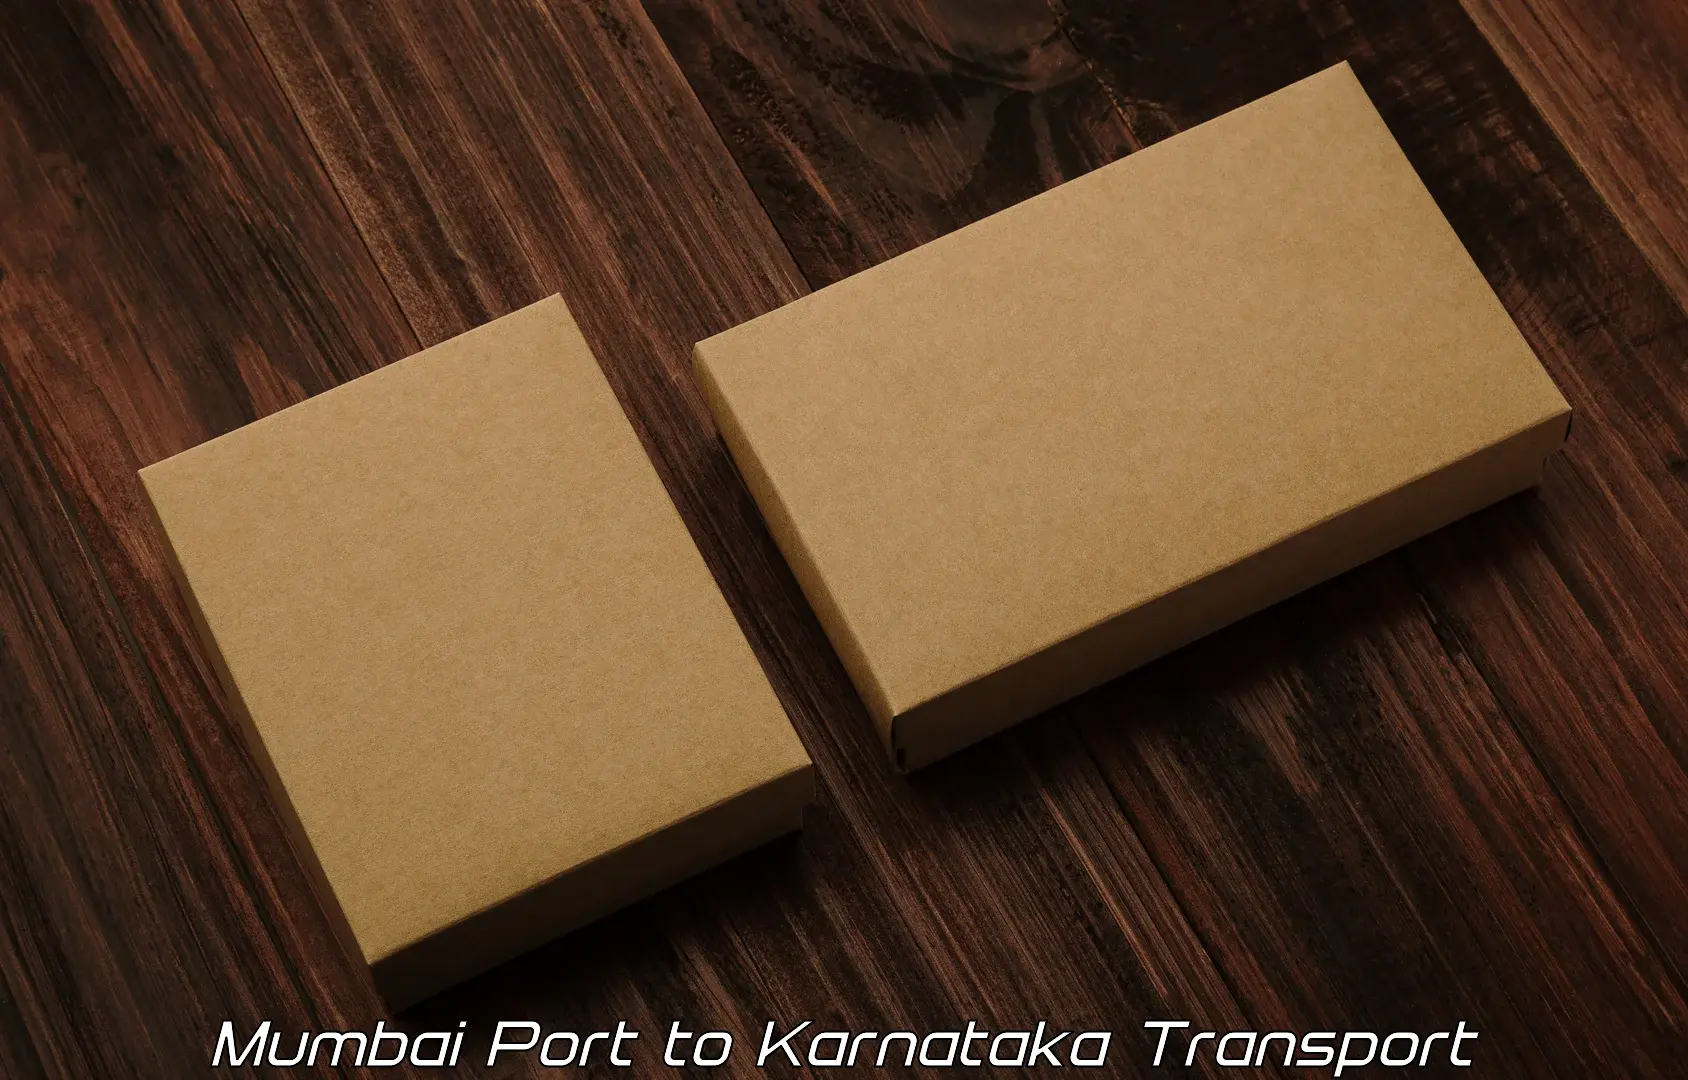 Cargo transport services in Mumbai Port to Raibag